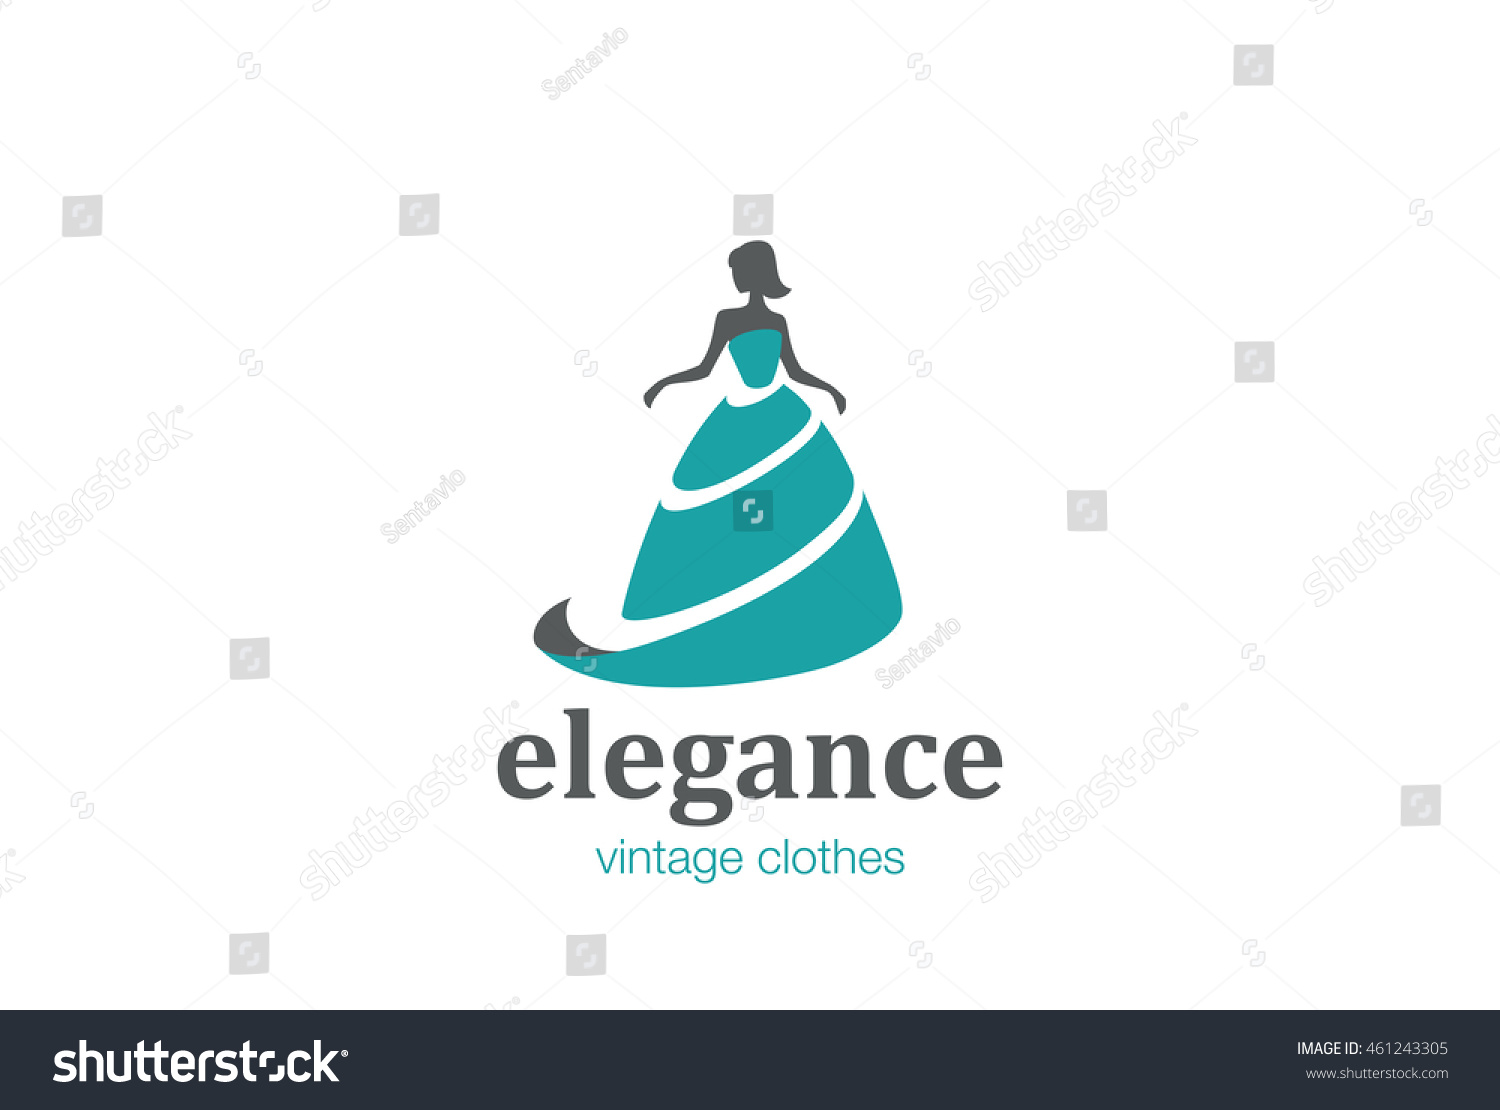 Elegant Woman Fashion Logo Design Vector Stock Vector 461243305 ...